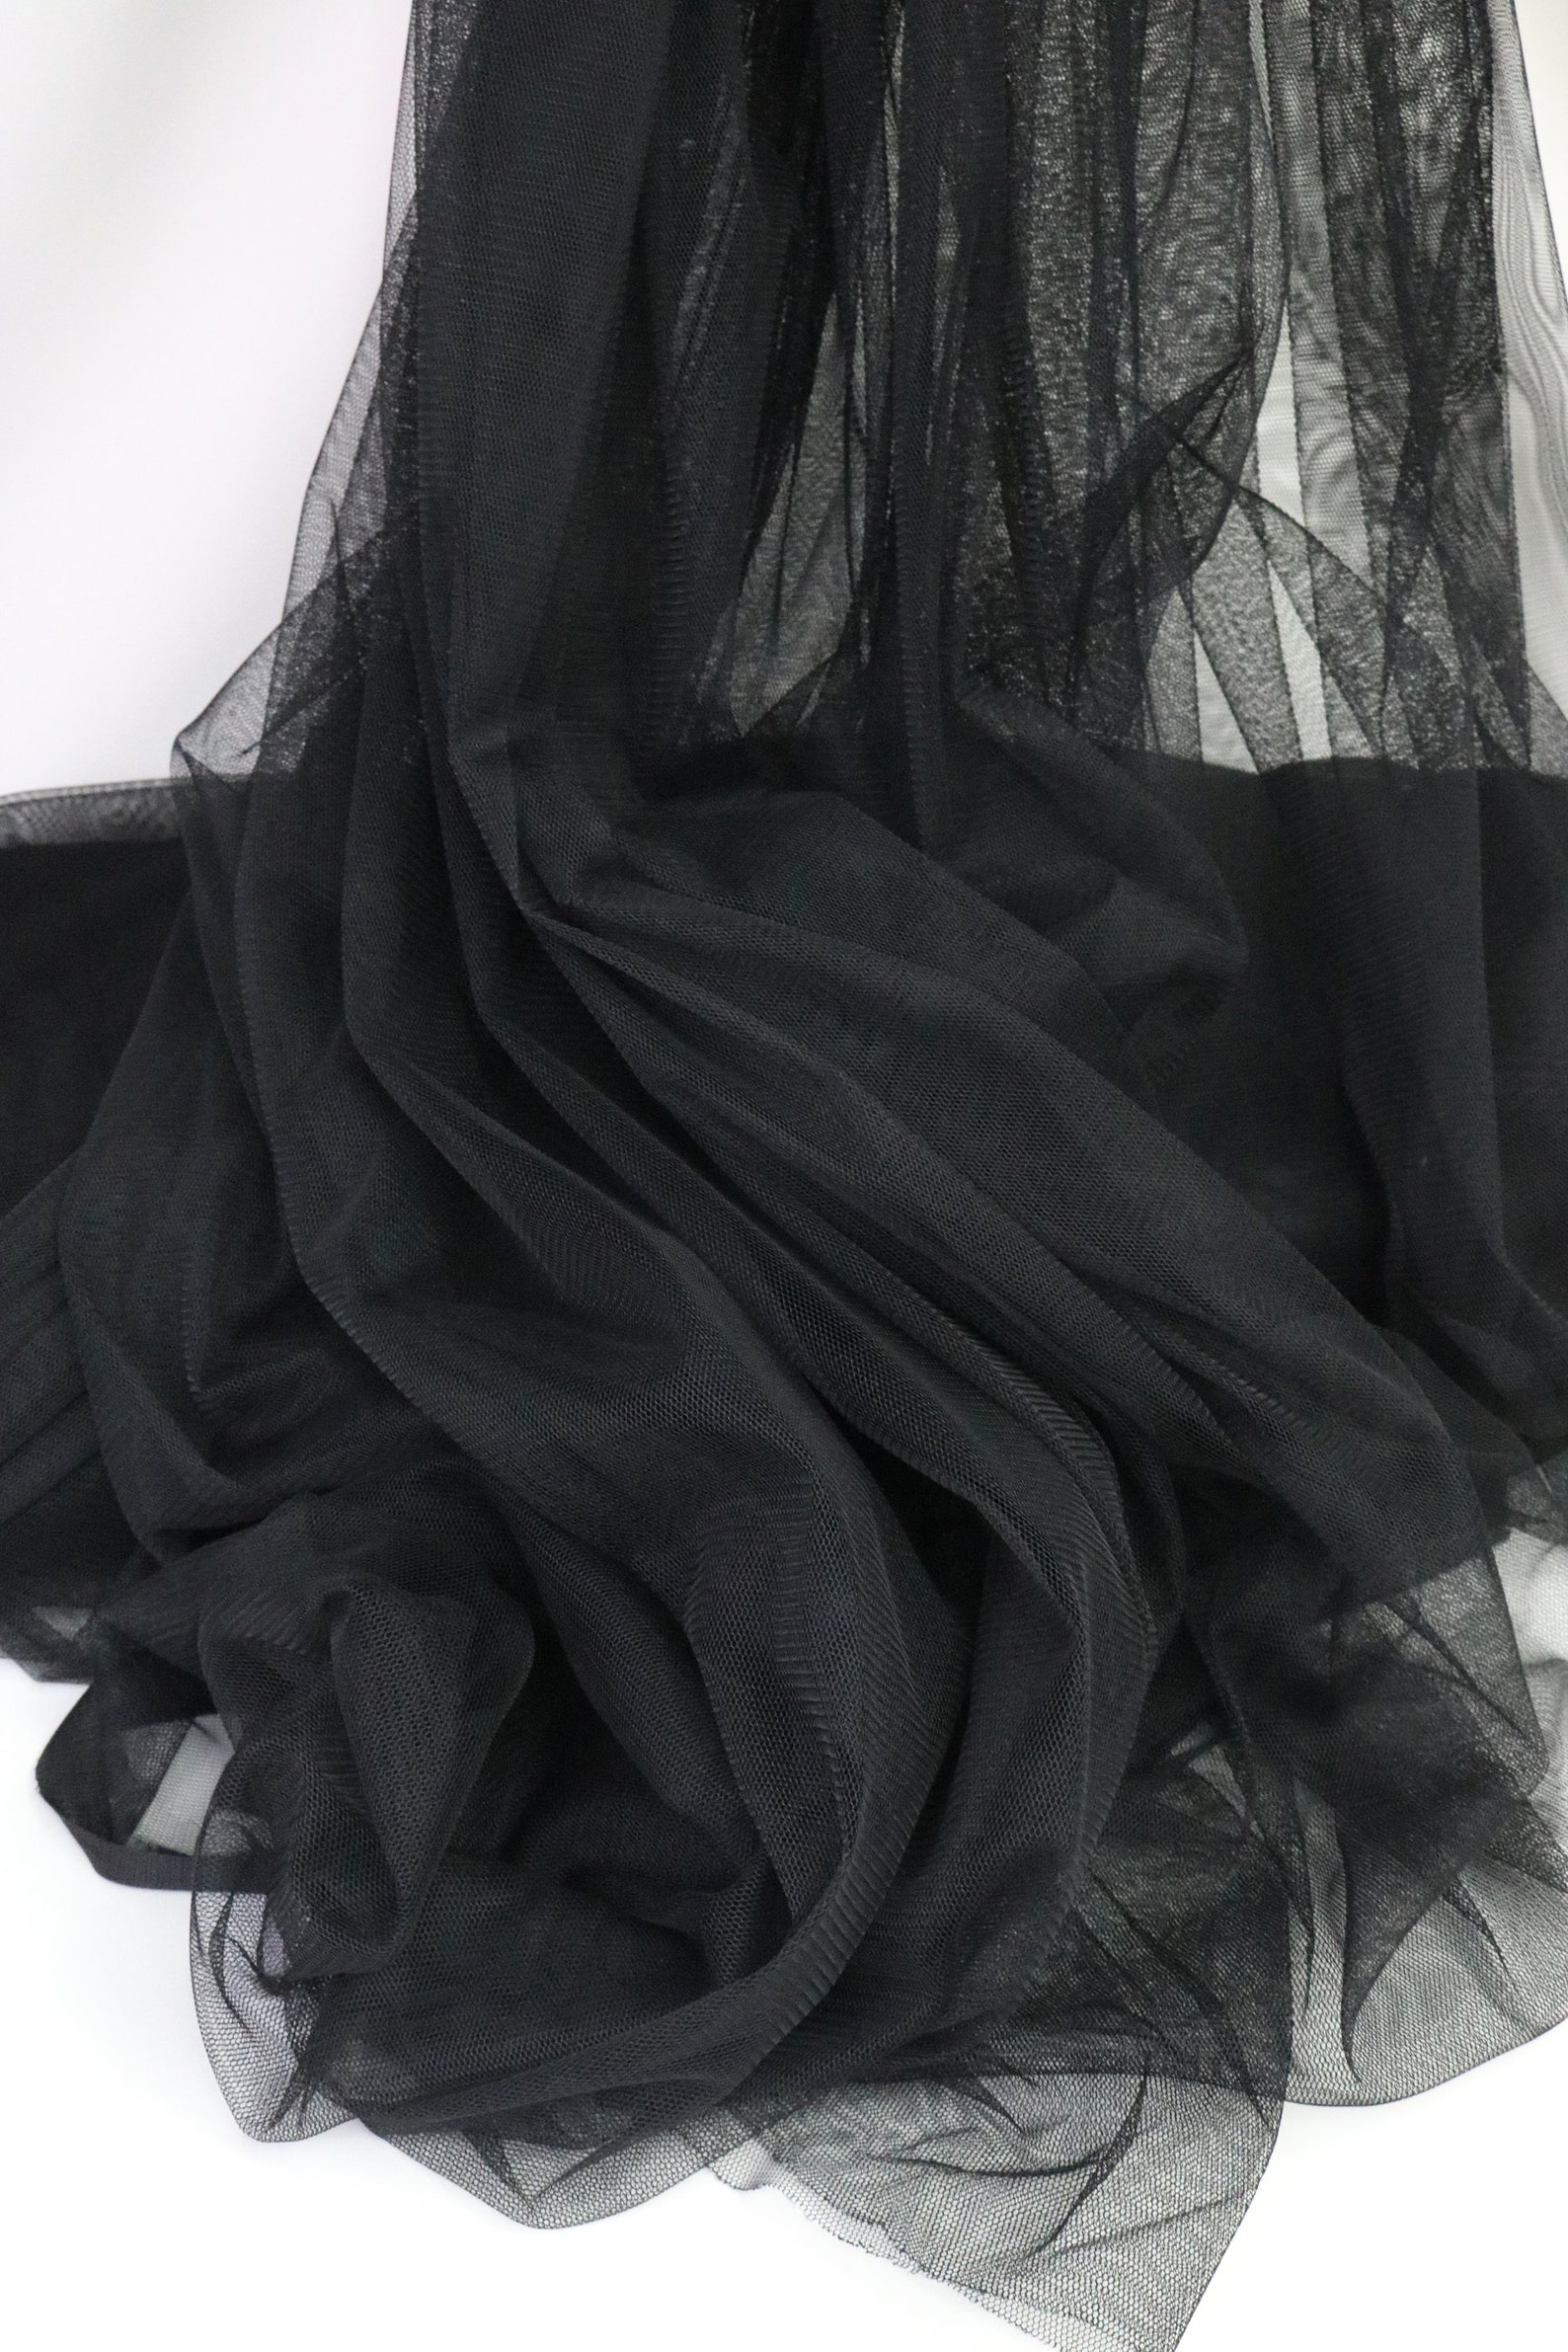 Black Extra Soft Italian Tulle Mesh Fabric Stretch Tulle 2 - Etsy UK